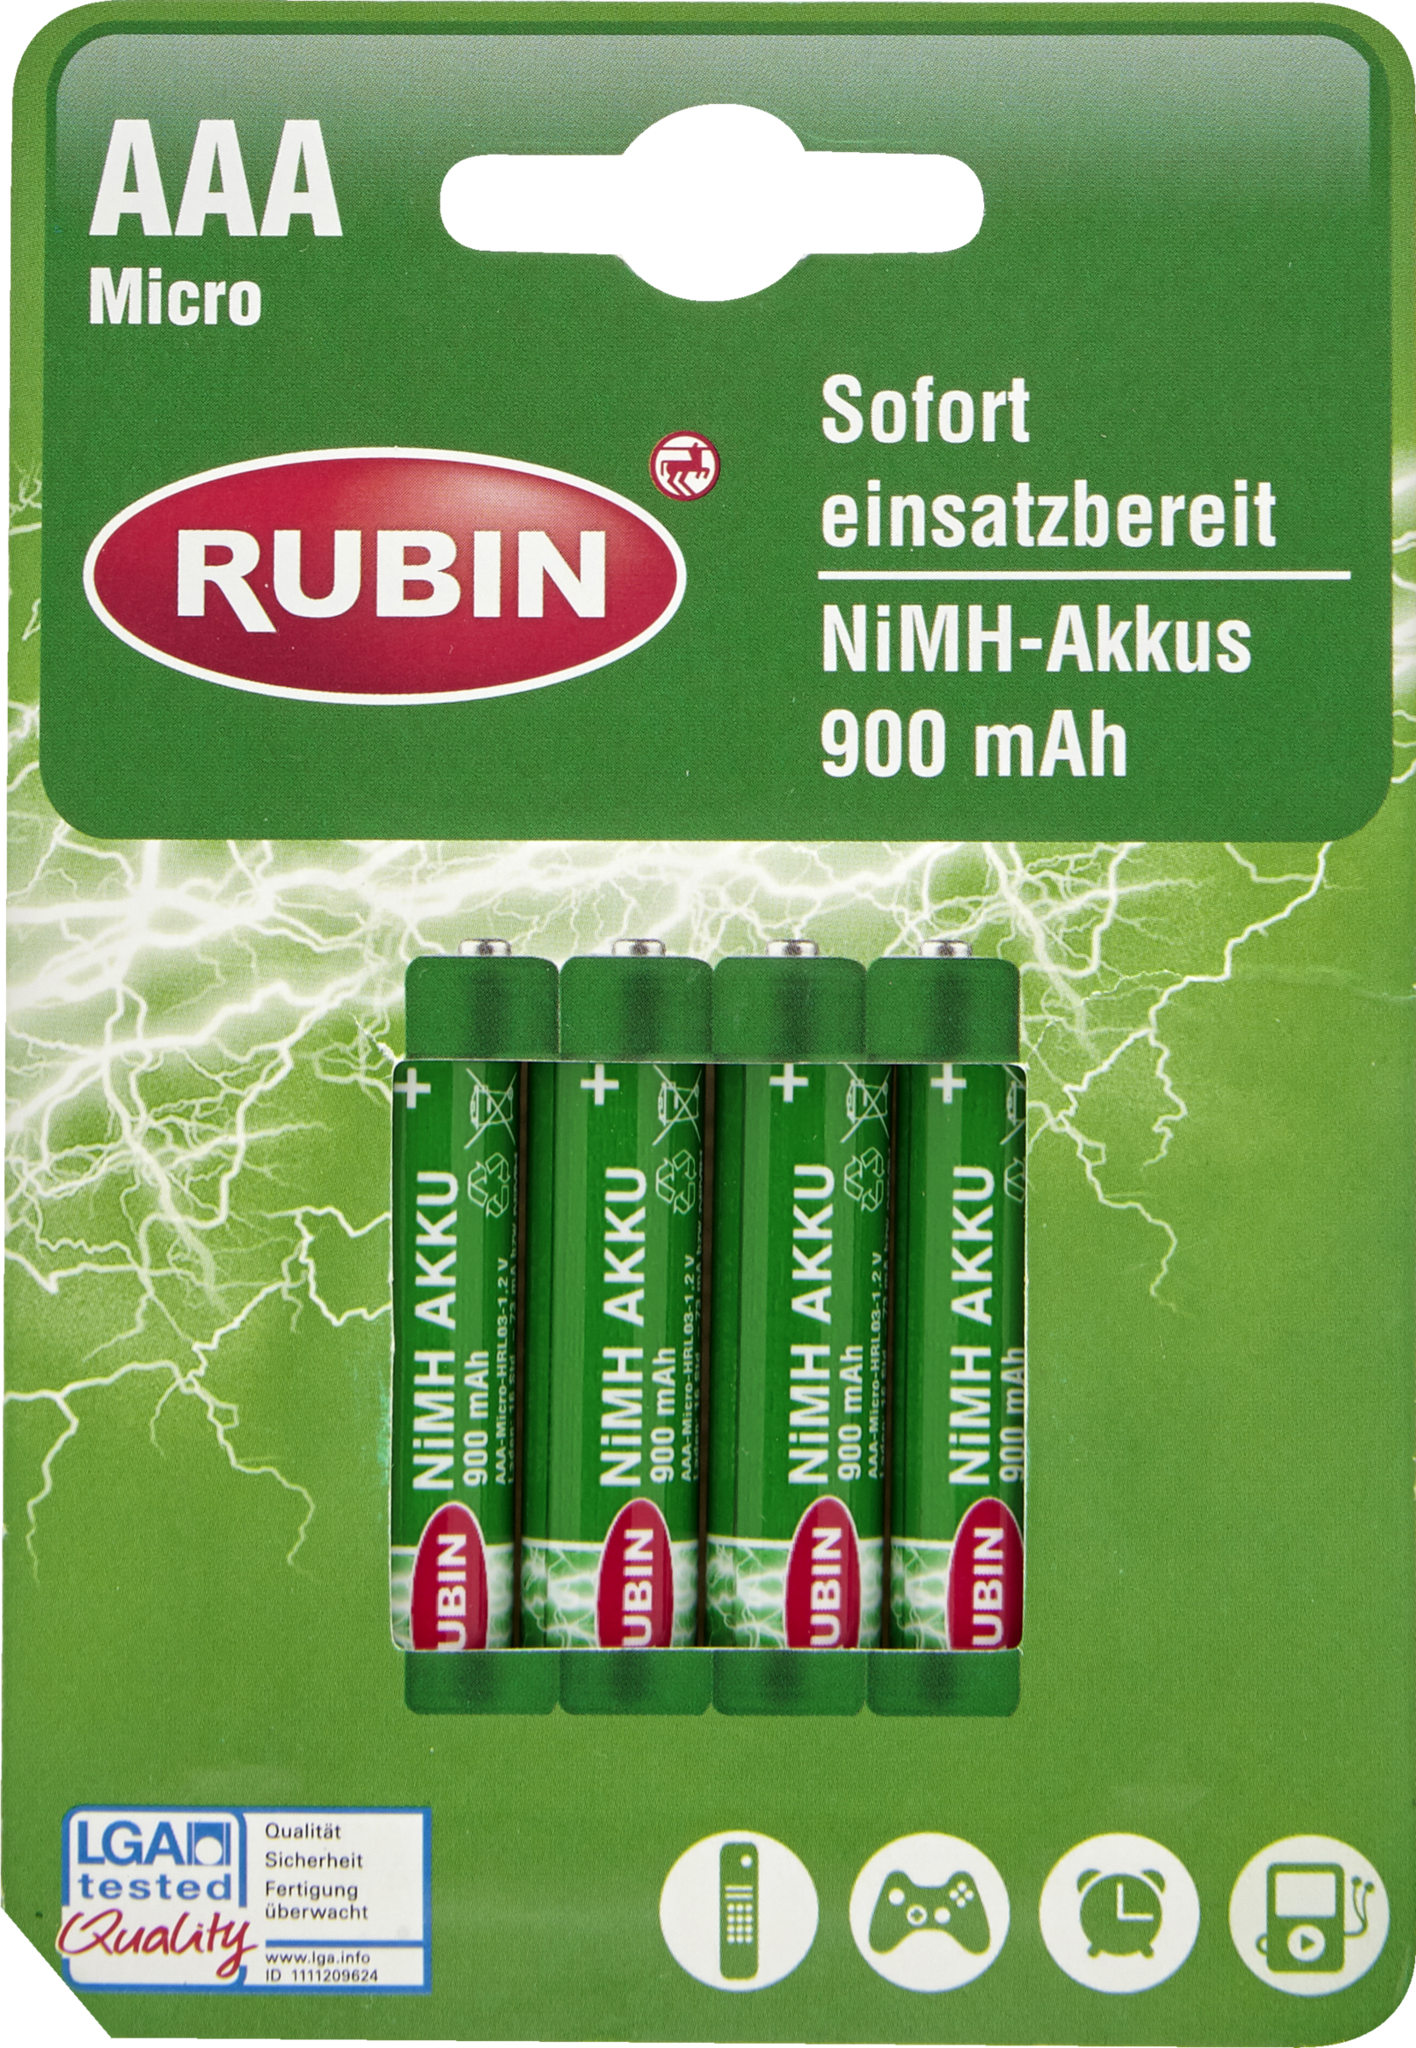 RUBIN Oplaadbare AAA Micro 4st - Drogist